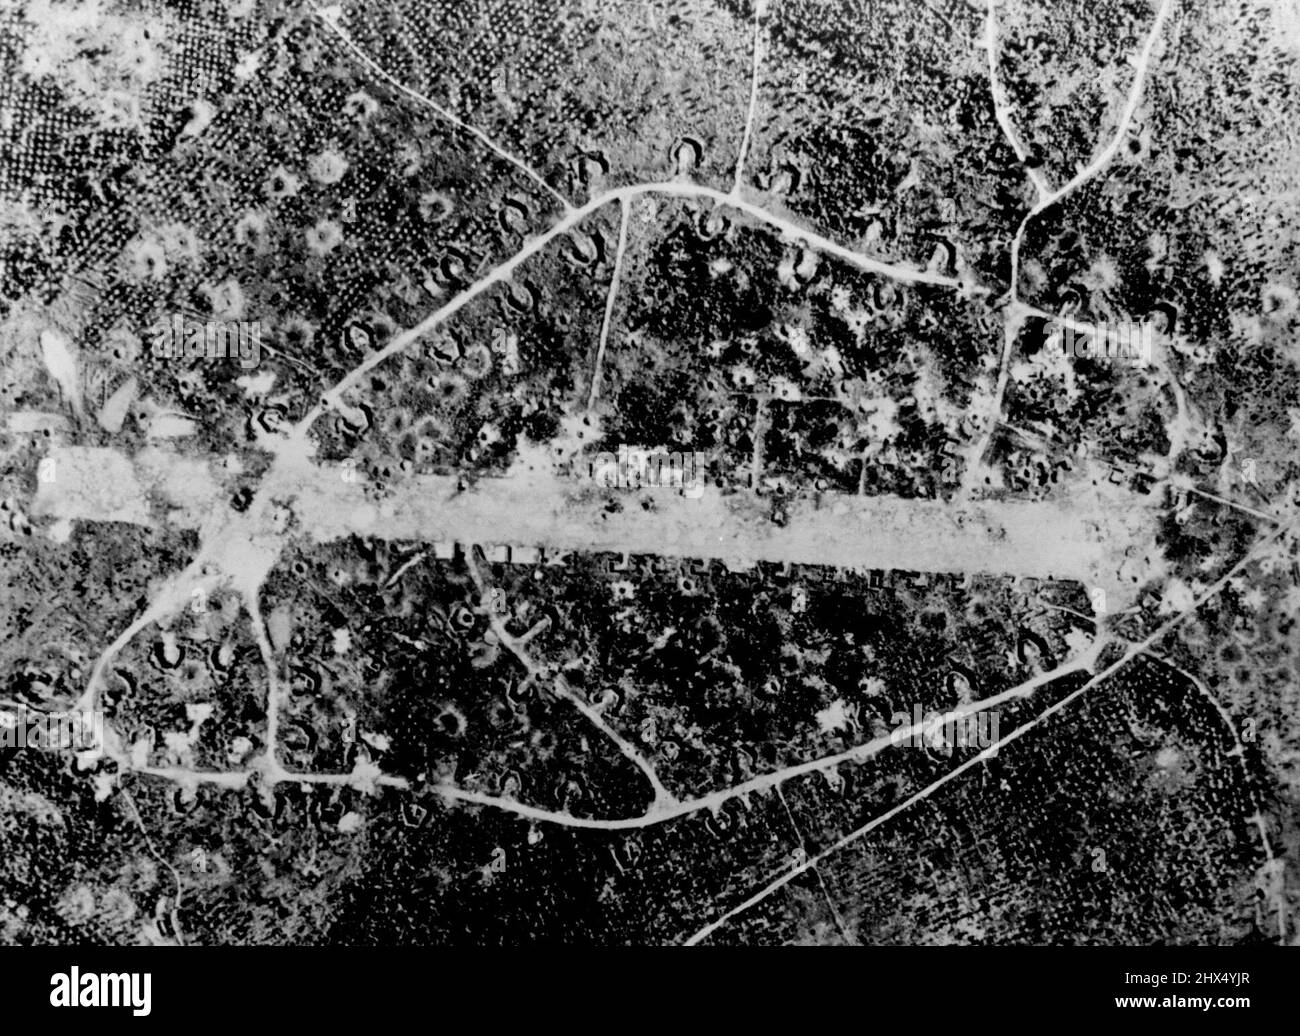 La piste d'atterrissage japonaise a été bombardée de manière importante sur la Nouvelle-Irlande dans le sud-ouest du Pacifique. La bande de l'un des gardes de Rabaul a été rendue pratiquement inutile par des bombardements continus par des avions alliés. 4 avril 1944. (Photo de la U.S. Navy Photograph). Banque D'Images